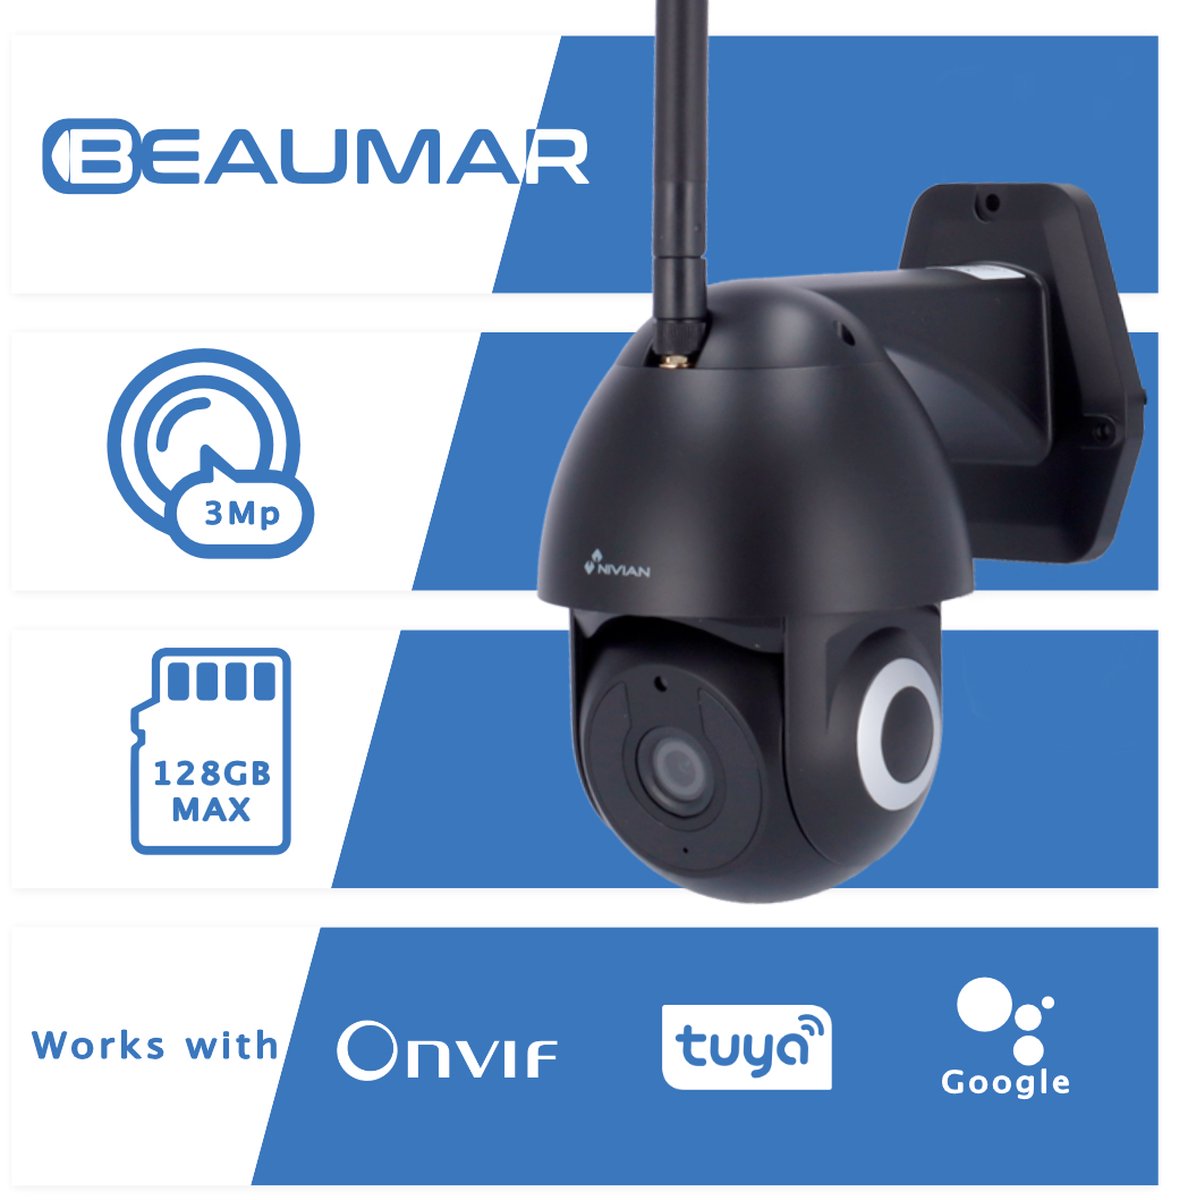 Beaumar ® Nivian ipc 0s2-black beveiligingscamera draadloos buiten- wifi smart - tracking - draai- en kantelbaar - 2k - 3 megapixel - camera beveiliging draadloos wifi - 3 jaar garantie